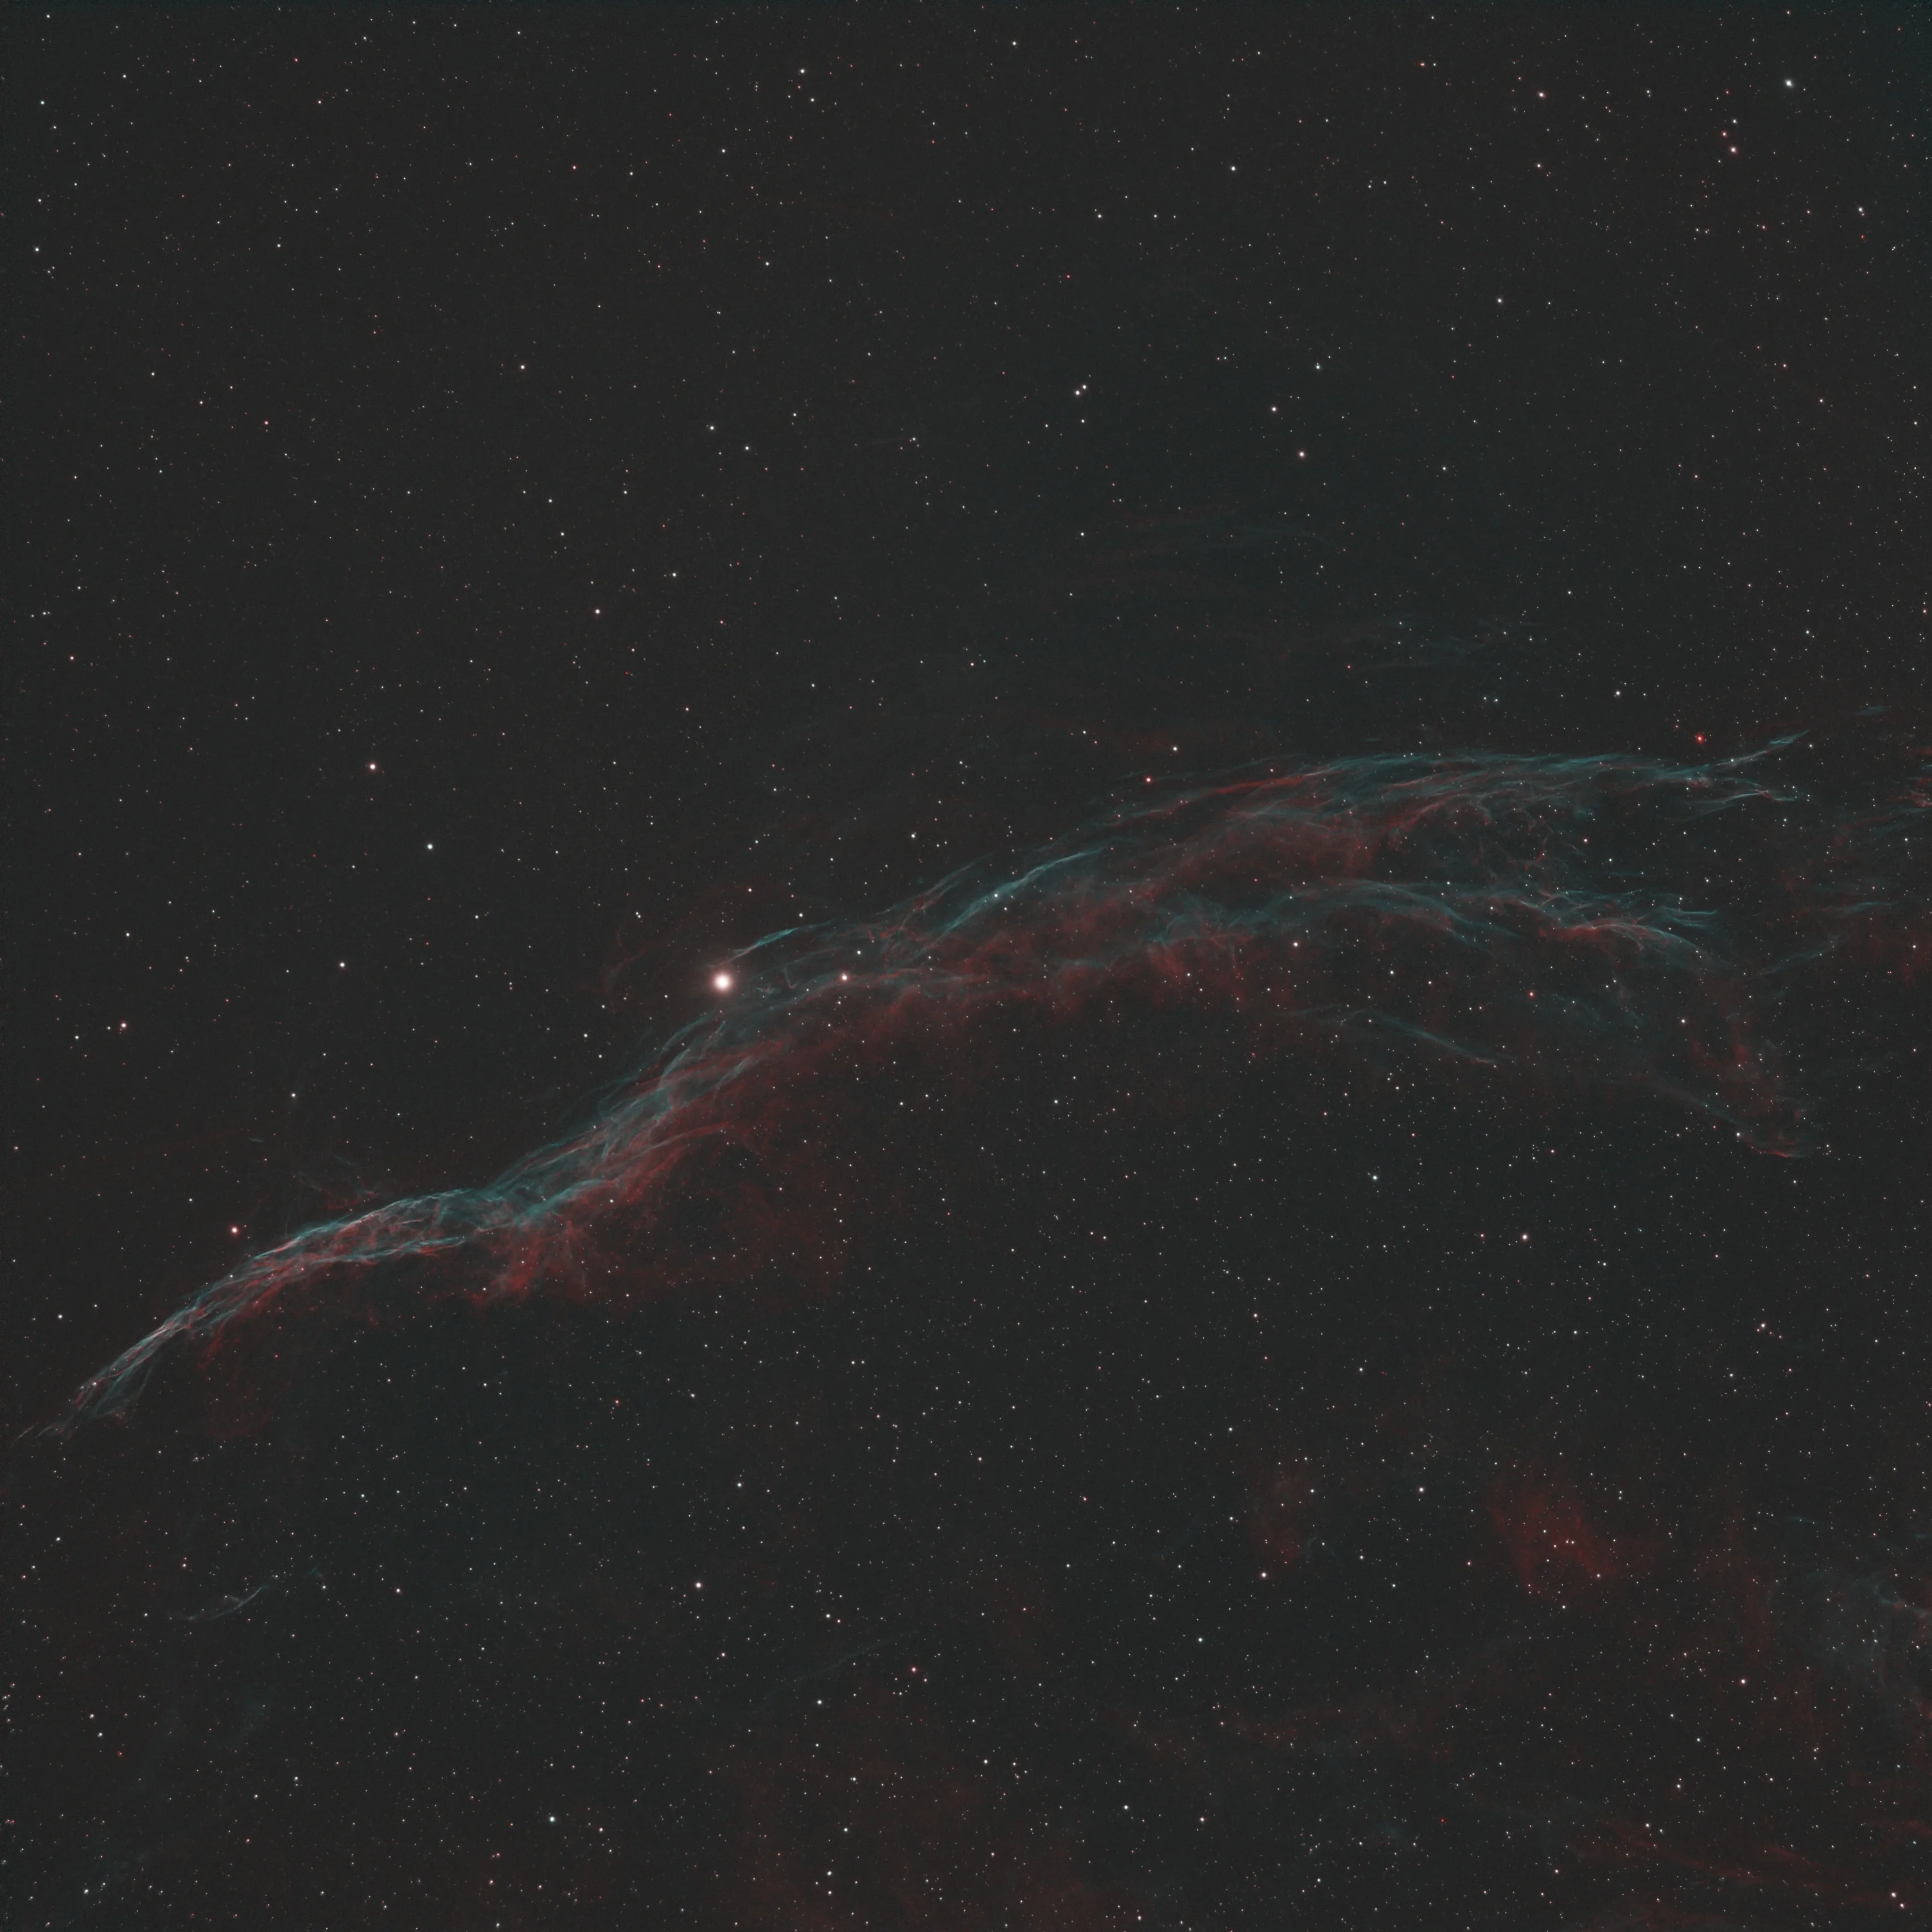 NGC 6690